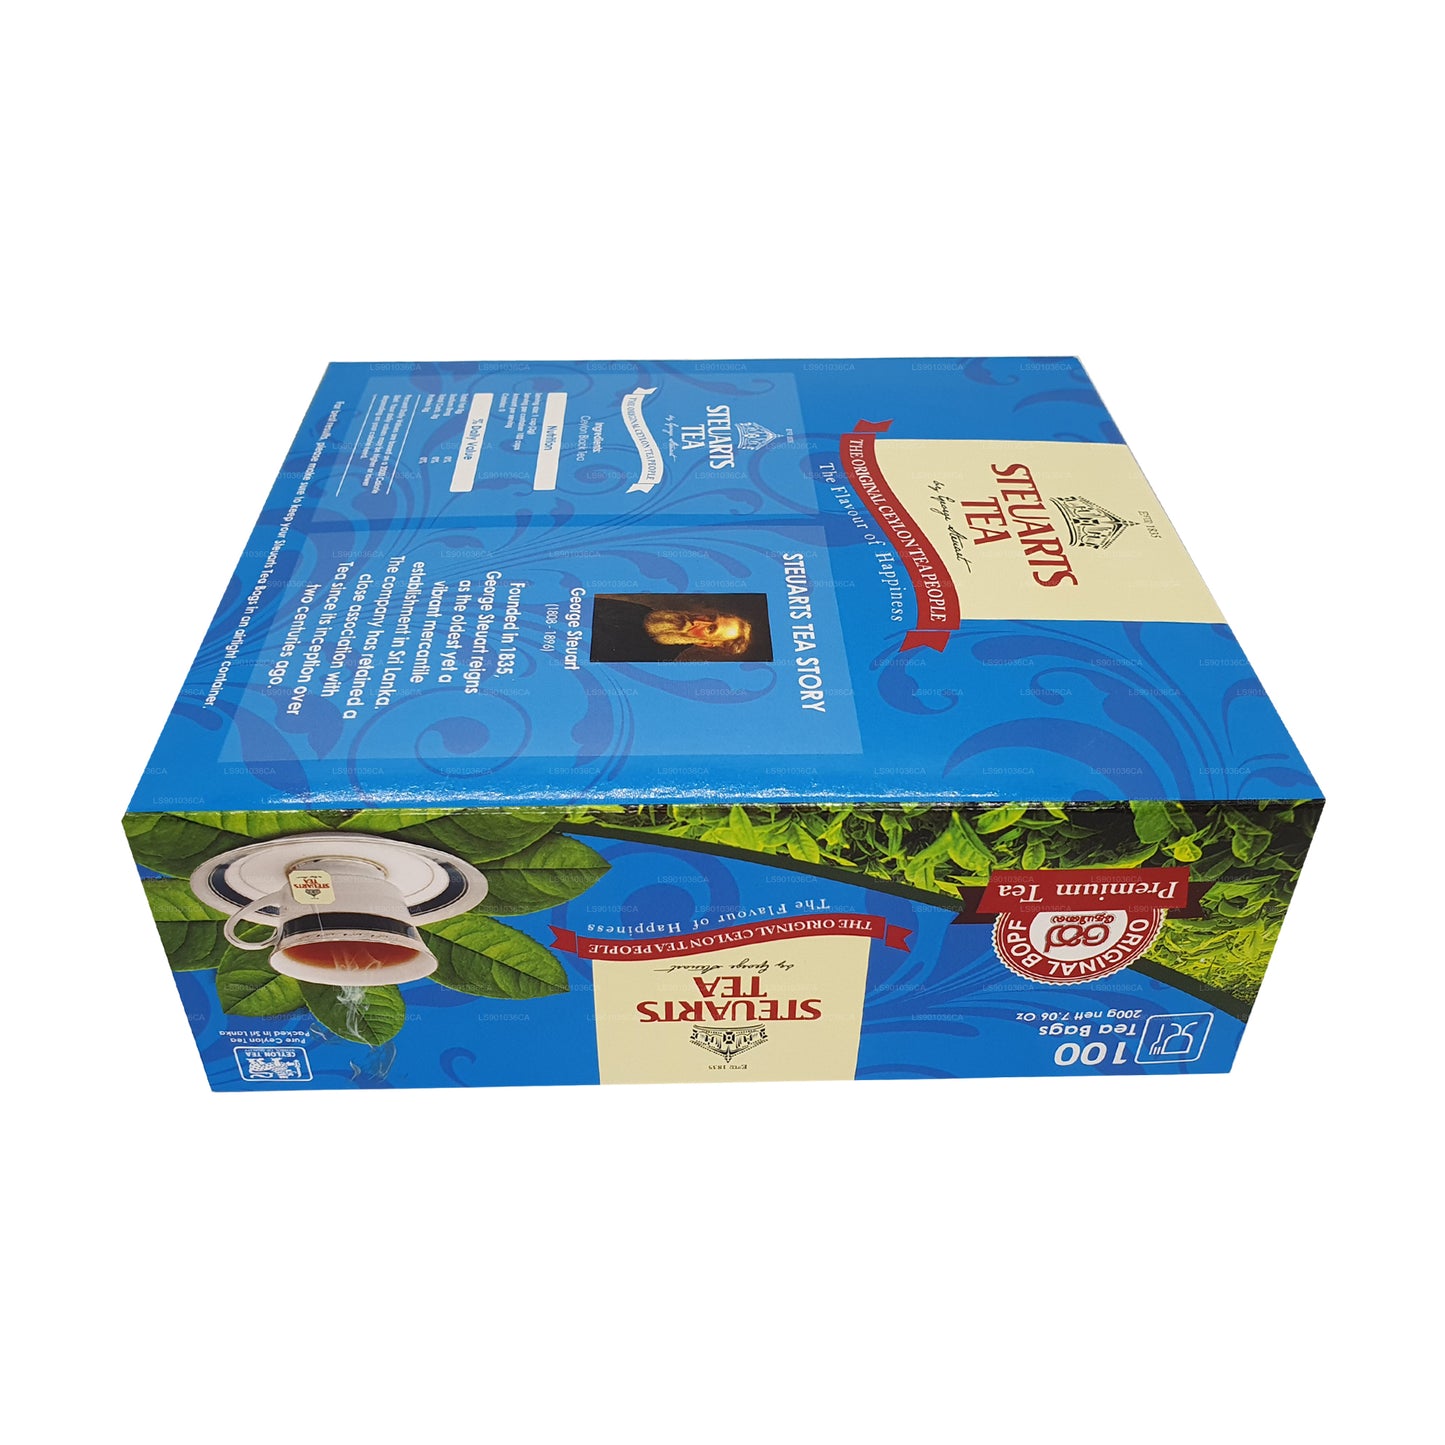 Чай Джорджа Стюарта Димбула (200 г) 100 пакетиков